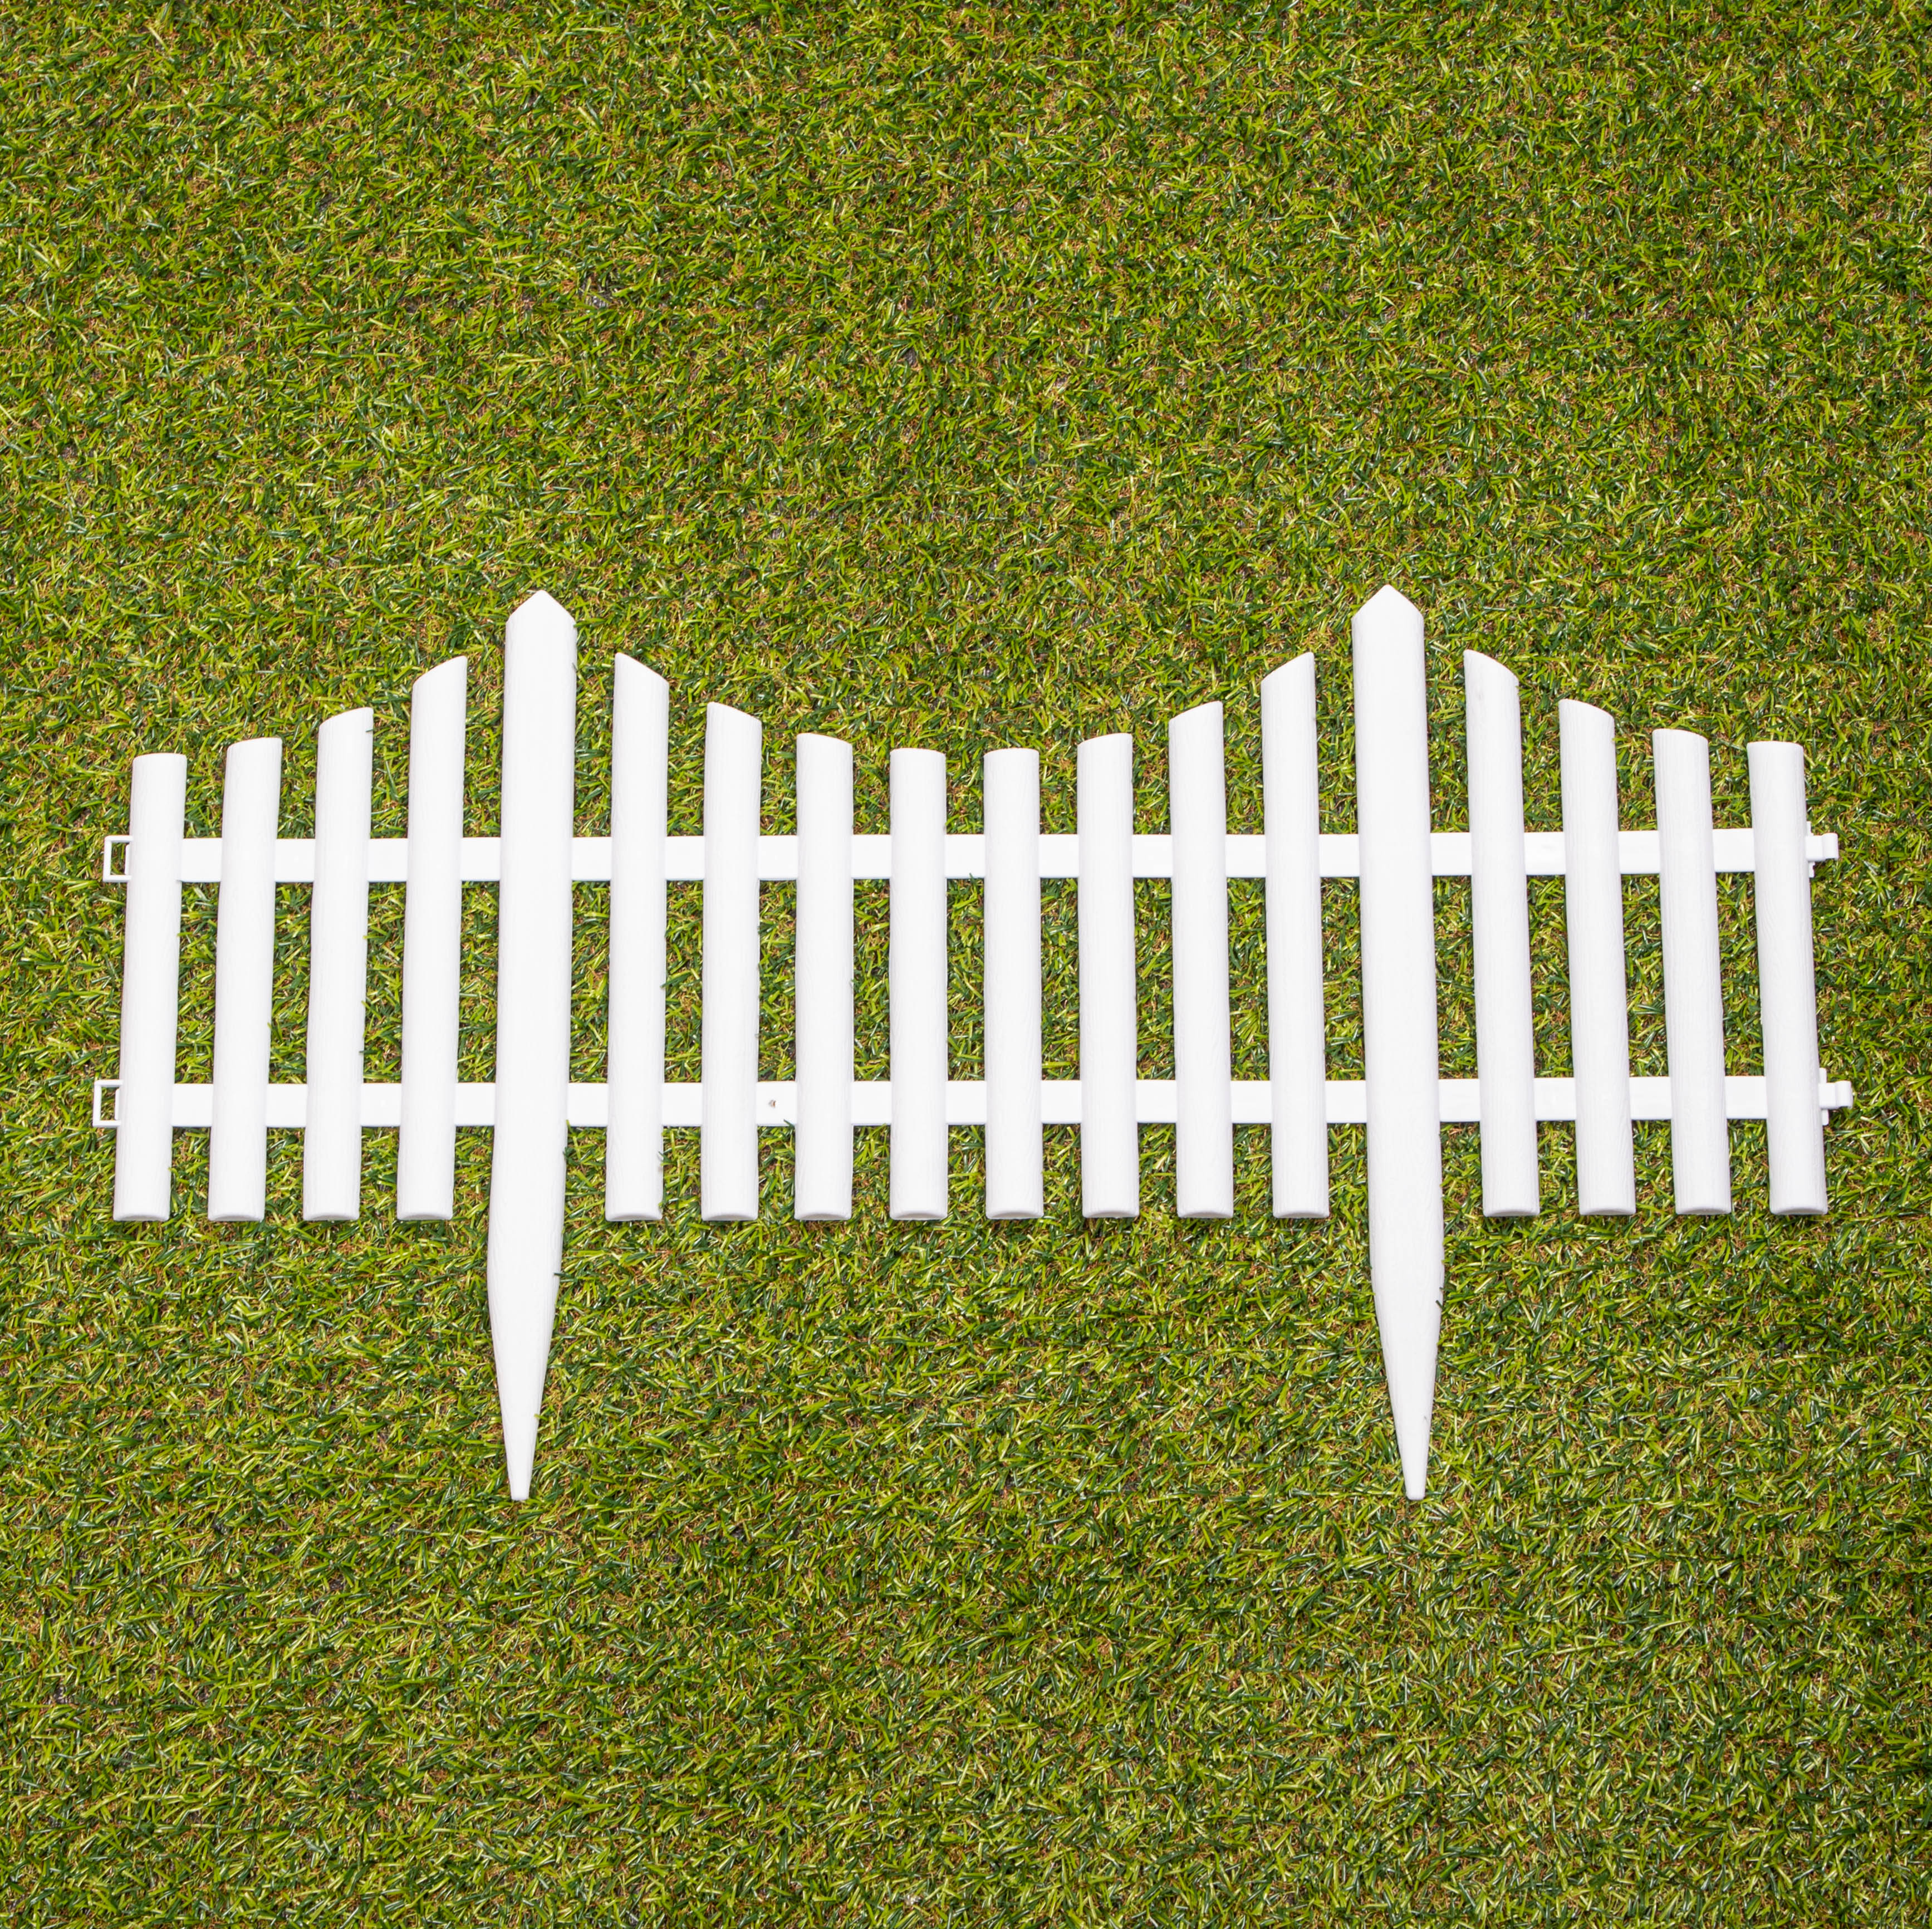 6 x 33cm 4 Piece Set White Wood Effect Picket Fence Garden Edging 